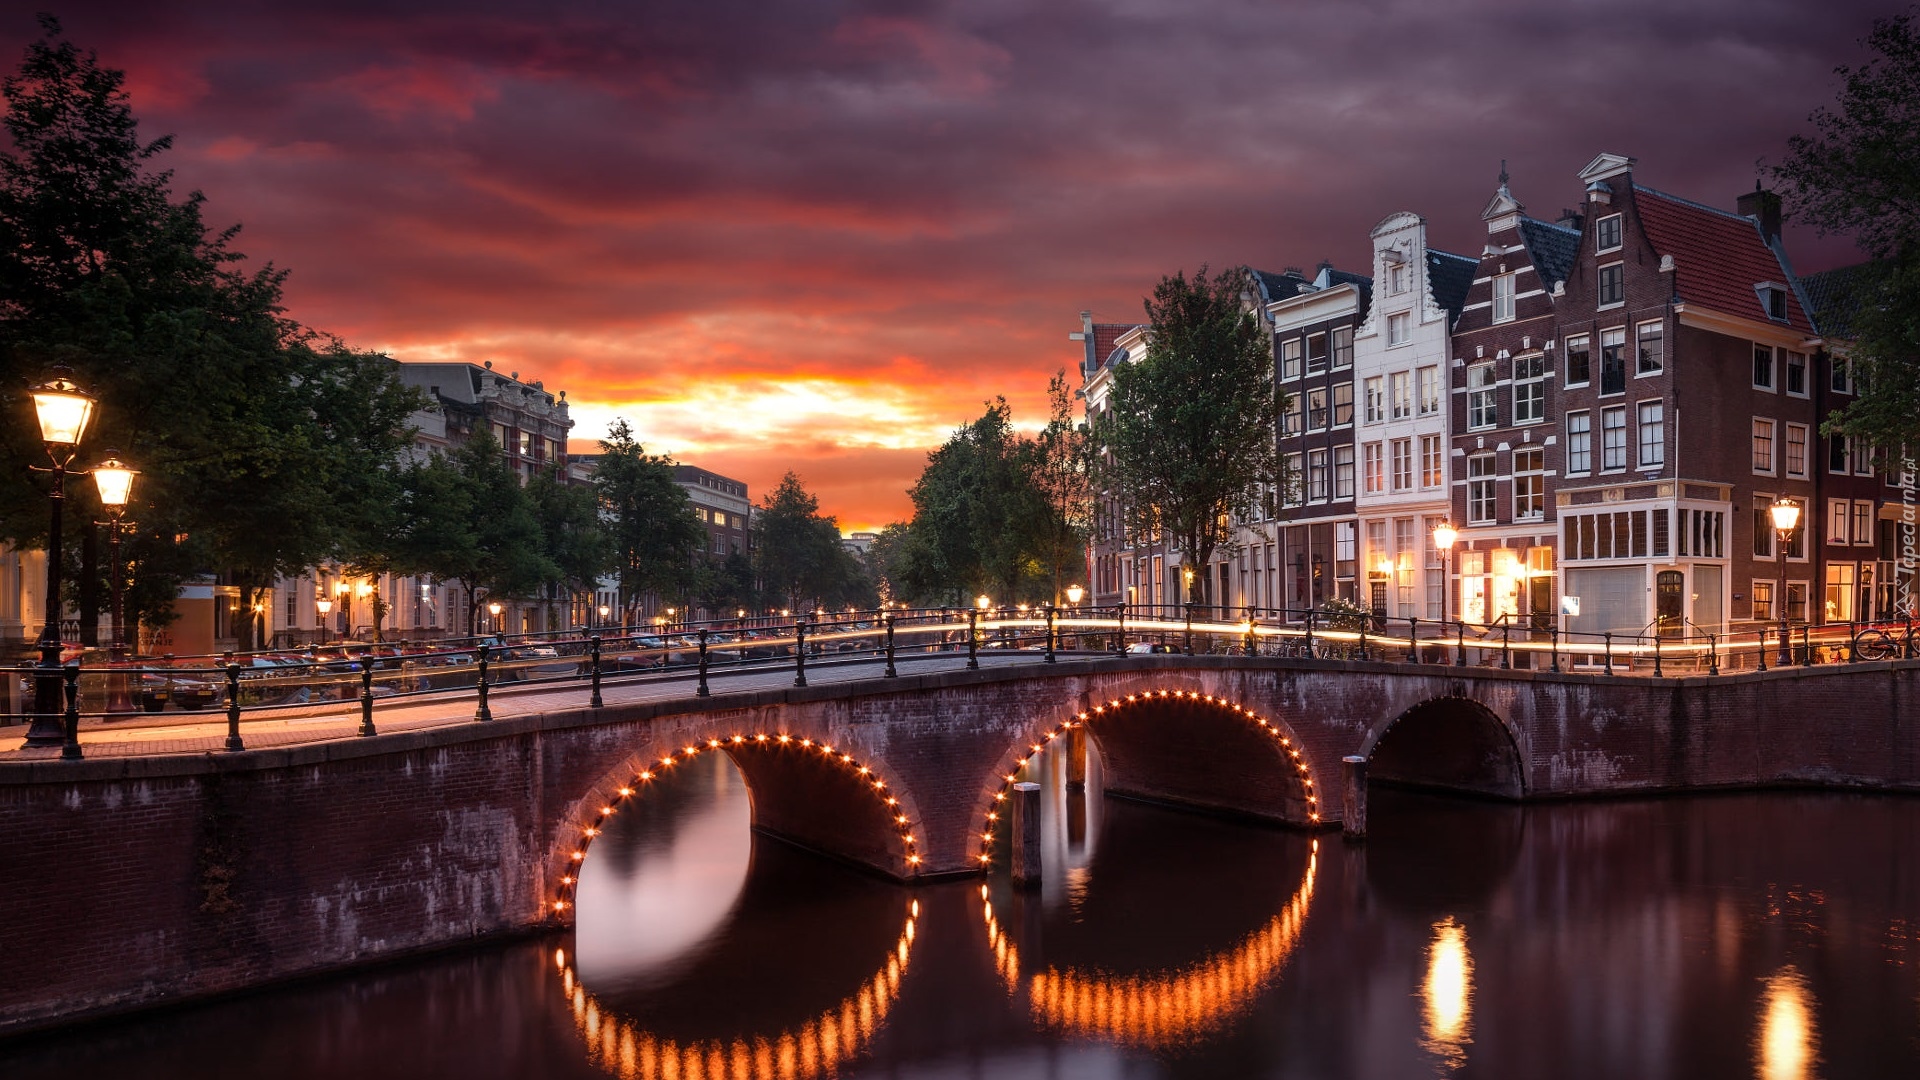 Holandia, Amsterdam, Rzeka, Kanał Leidsegracht, Most, Drzewa, Domy, Światła, Zachód słońca, Chmury